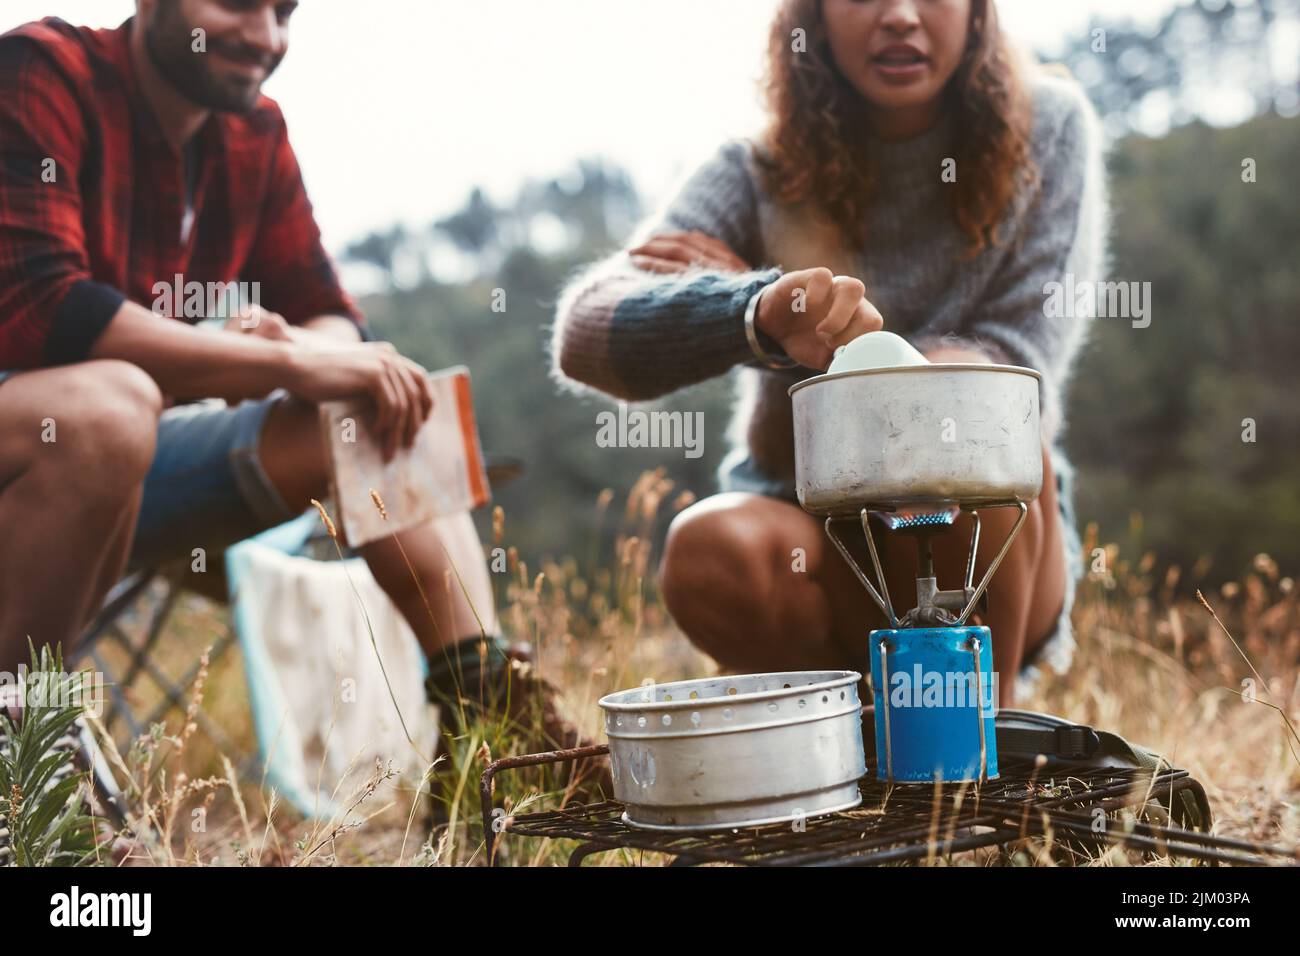 Mujer joven preparando la comida en una estufa de gas mientras acampaba con su novio. Pareja joven y aventurera acampando en el bosque. Foto de stock